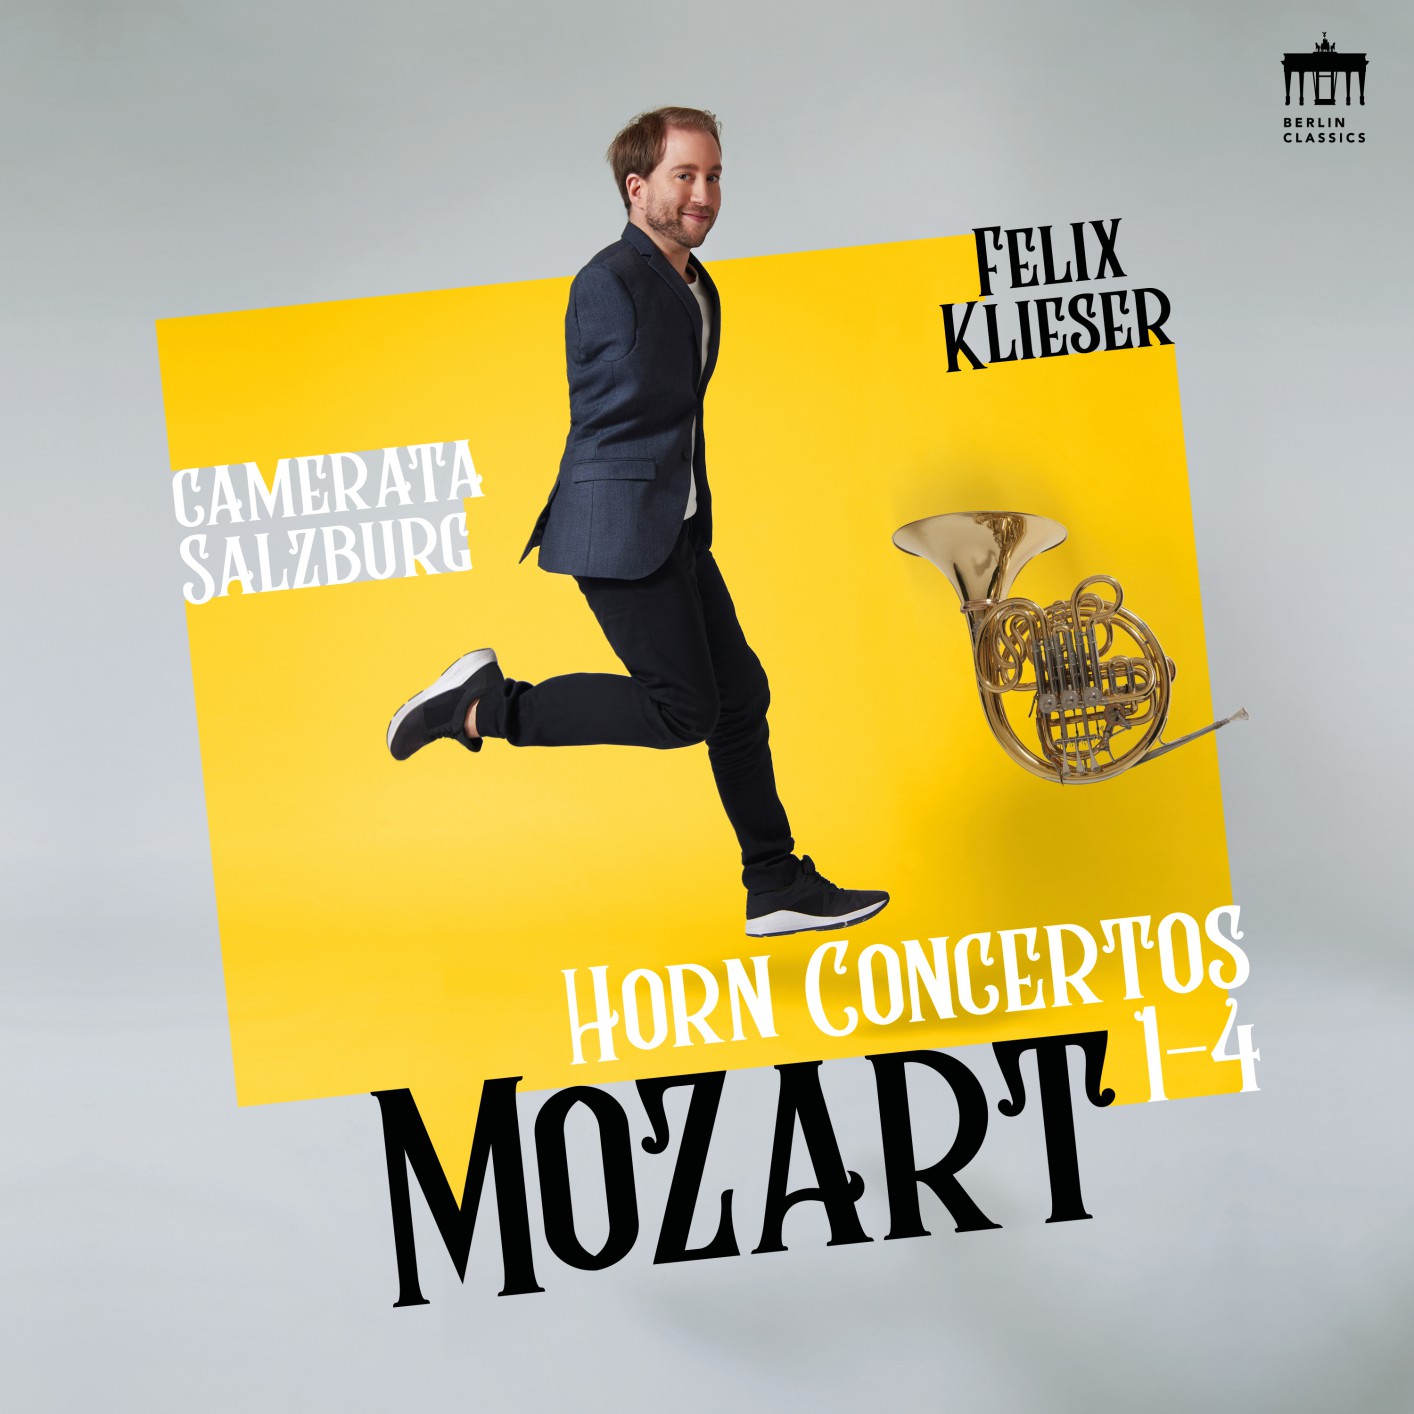 Felix Klieser - Mozart: Horn Concertos 1-4 (2019) [FLAC 24bit/96kHz]